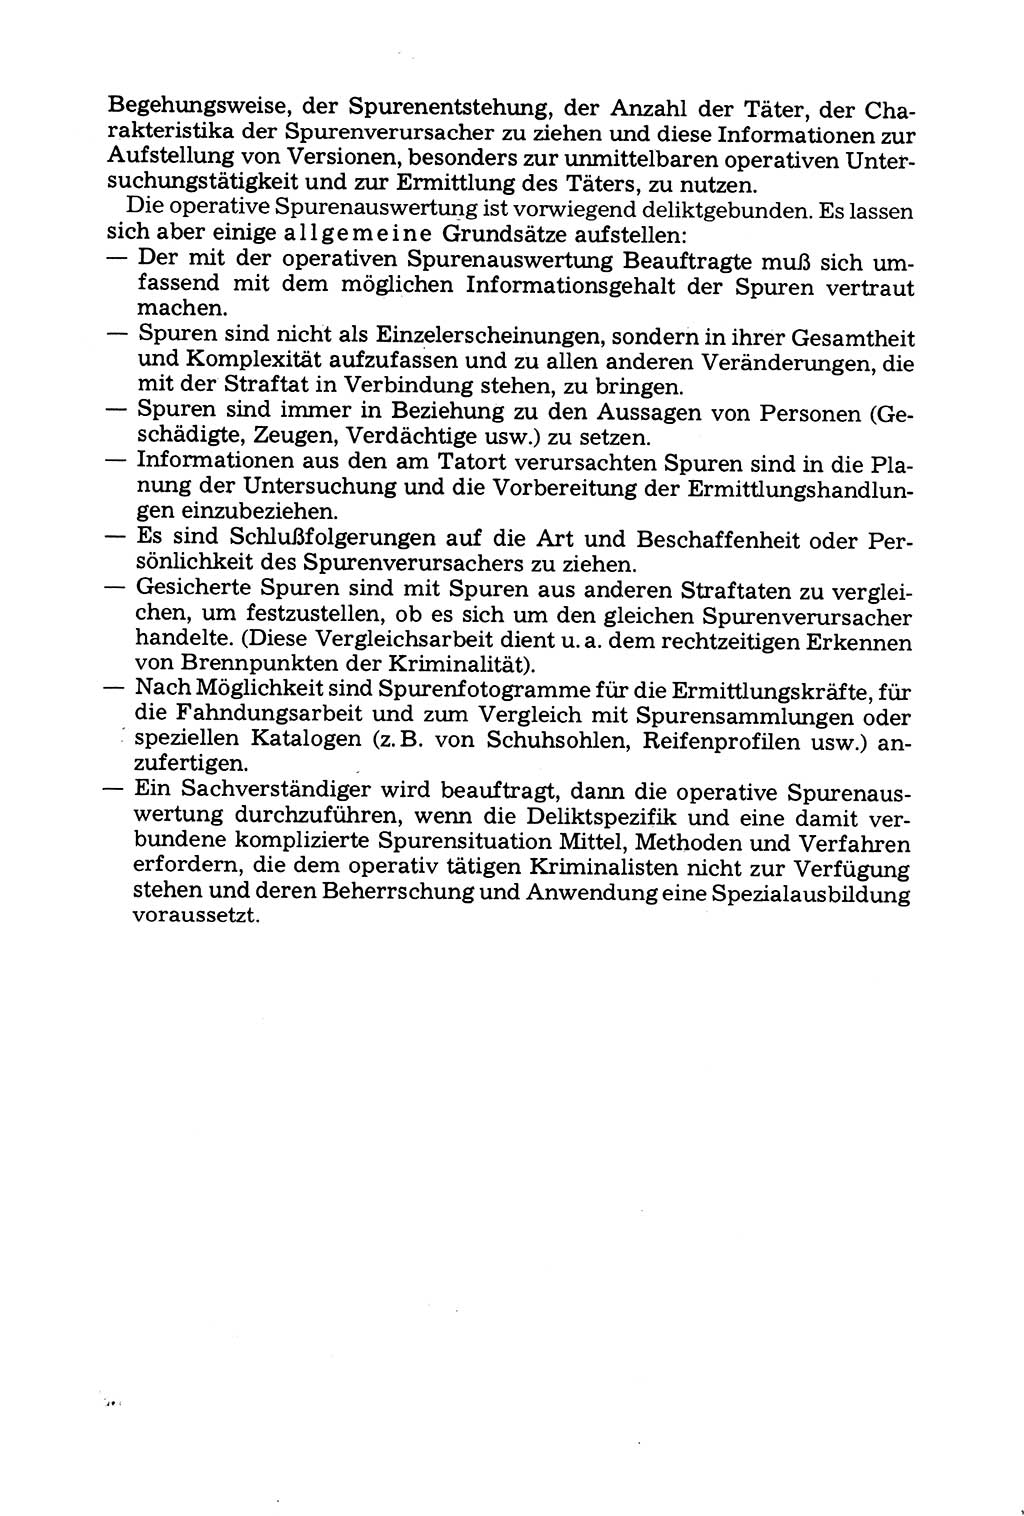 Grundfragen der Beweisführung im Ermittlungsverfahren [Deutsche Demokratische Republik (DDR)] 1980, Seite 238 (Bws.-Fhrg. EV DDR 1980, S. 238)